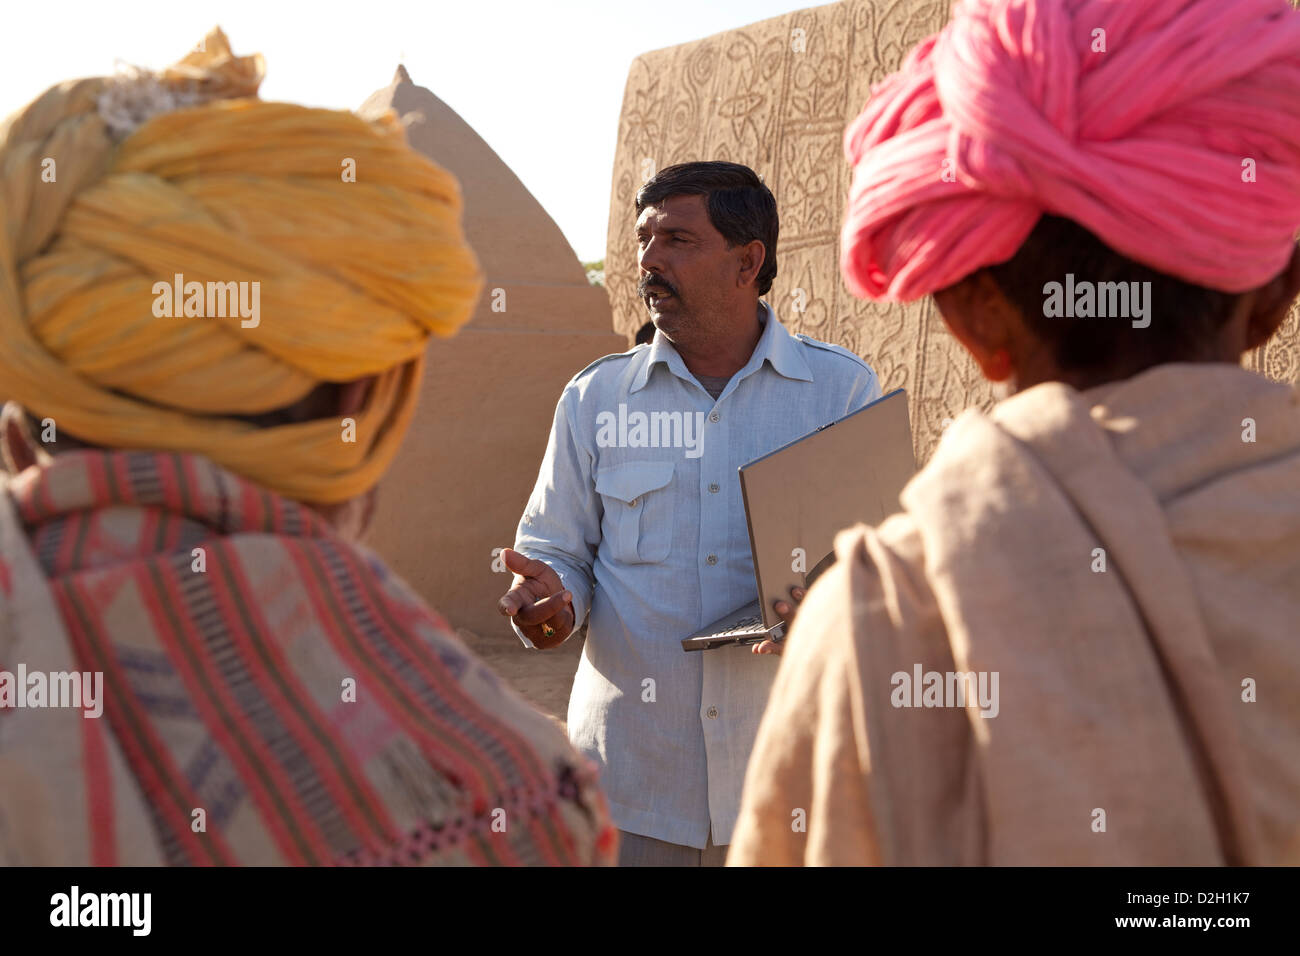 L'Inde, Rajasthan, désert du Thar, maire de district de visiter les villageois et holding laptop Banque D'Images